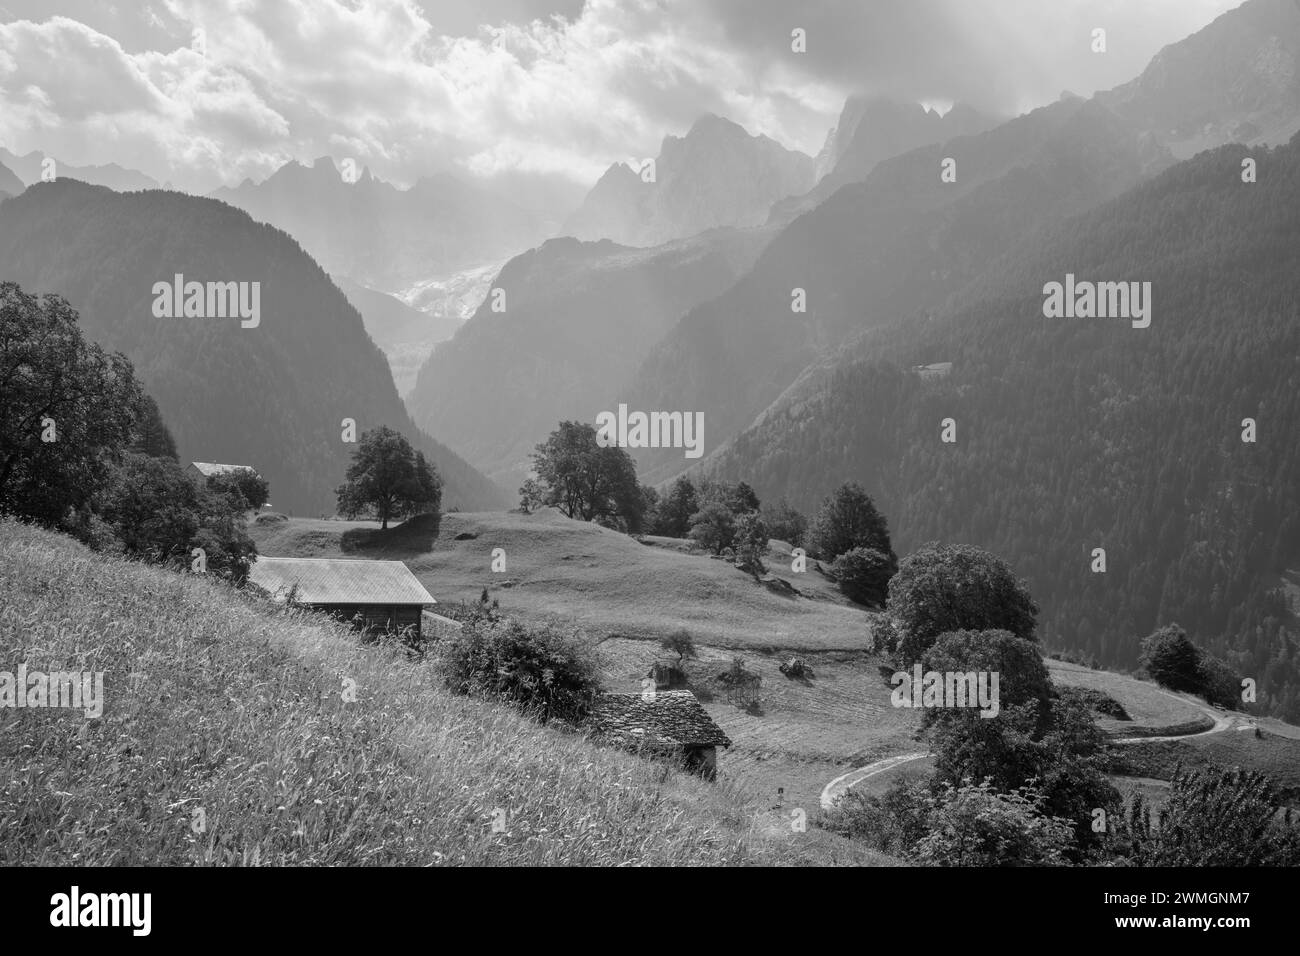 Le vette del Piz Badile, del Pizzo Cengalo e della Sciora nella catena del Bregaglia - Svizzera. Foto Stock